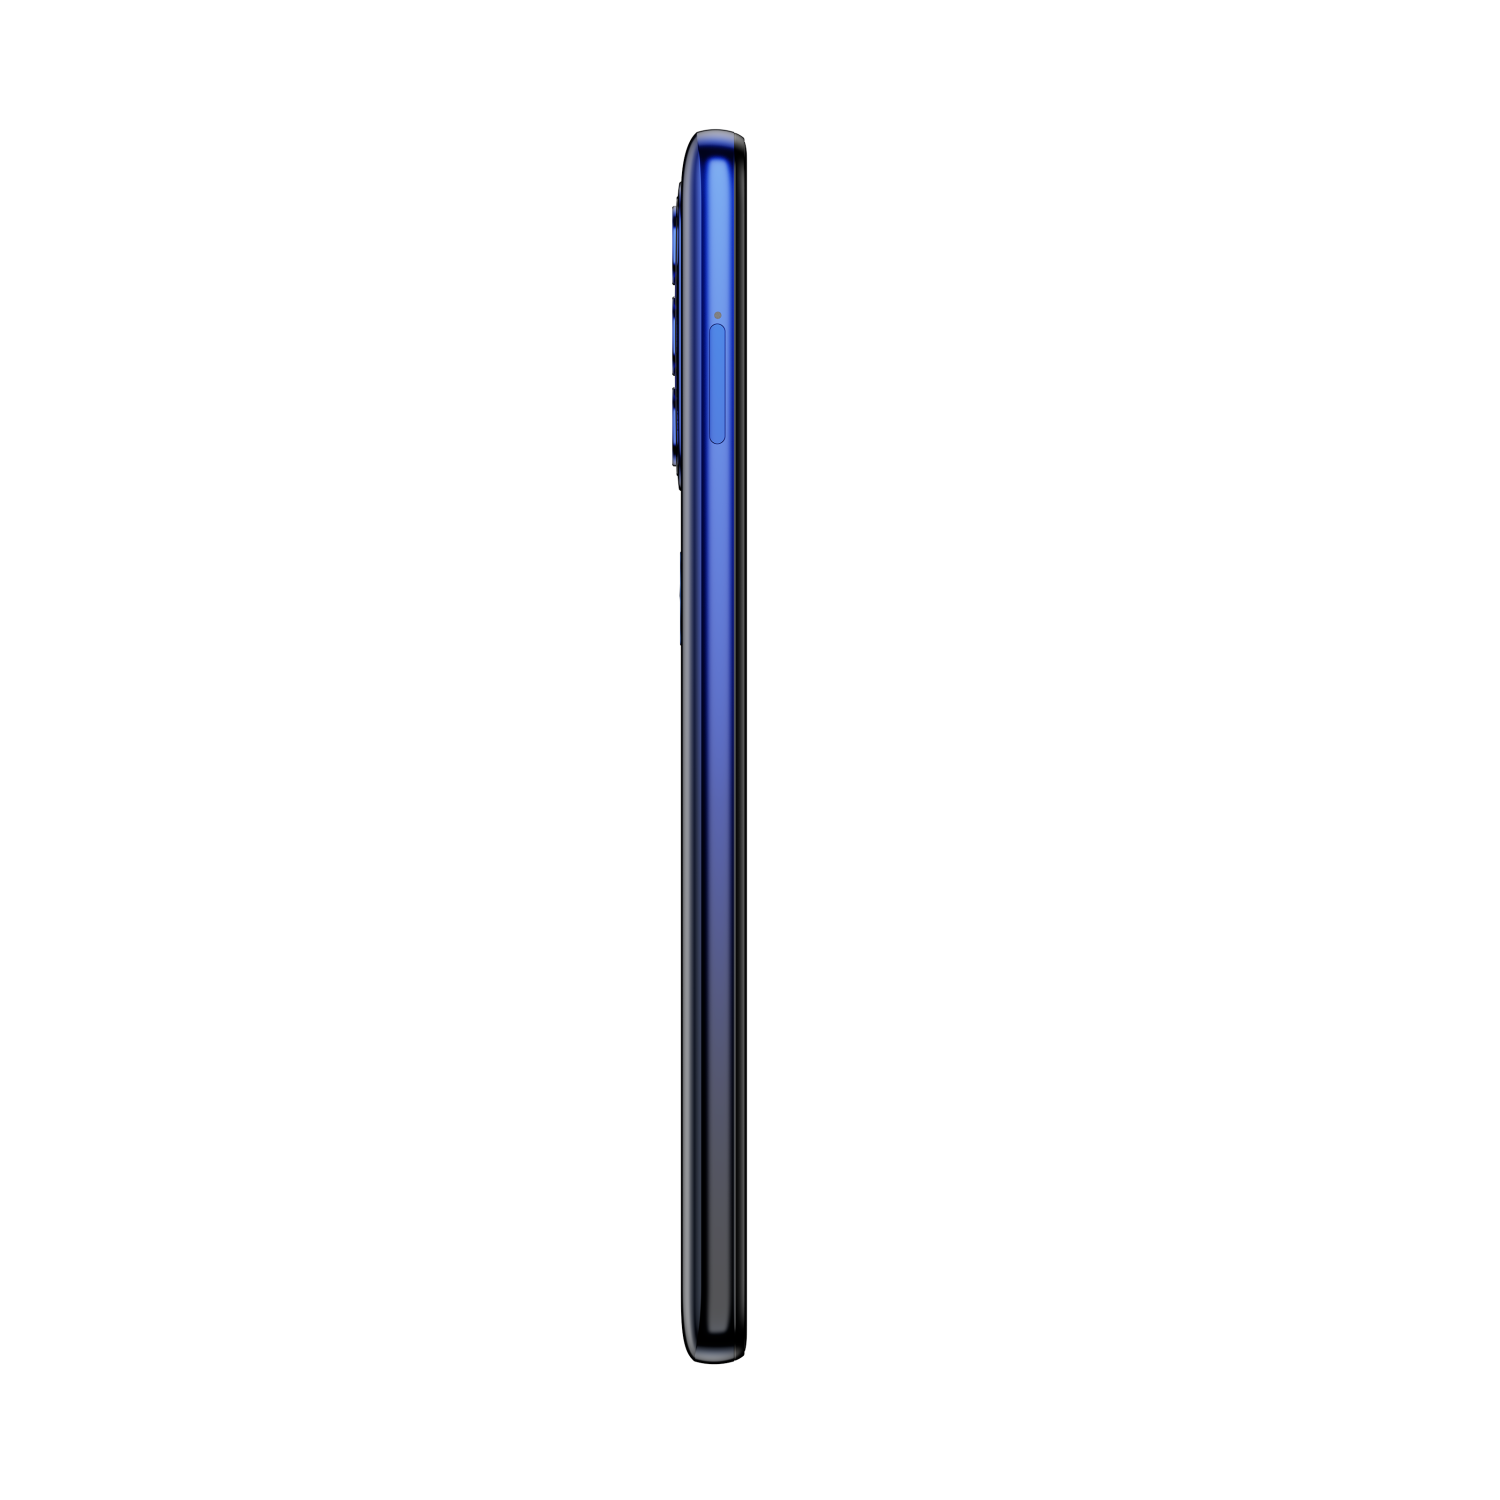 Motorola Moto G51 5G 4GB/64GB Horizon Blue